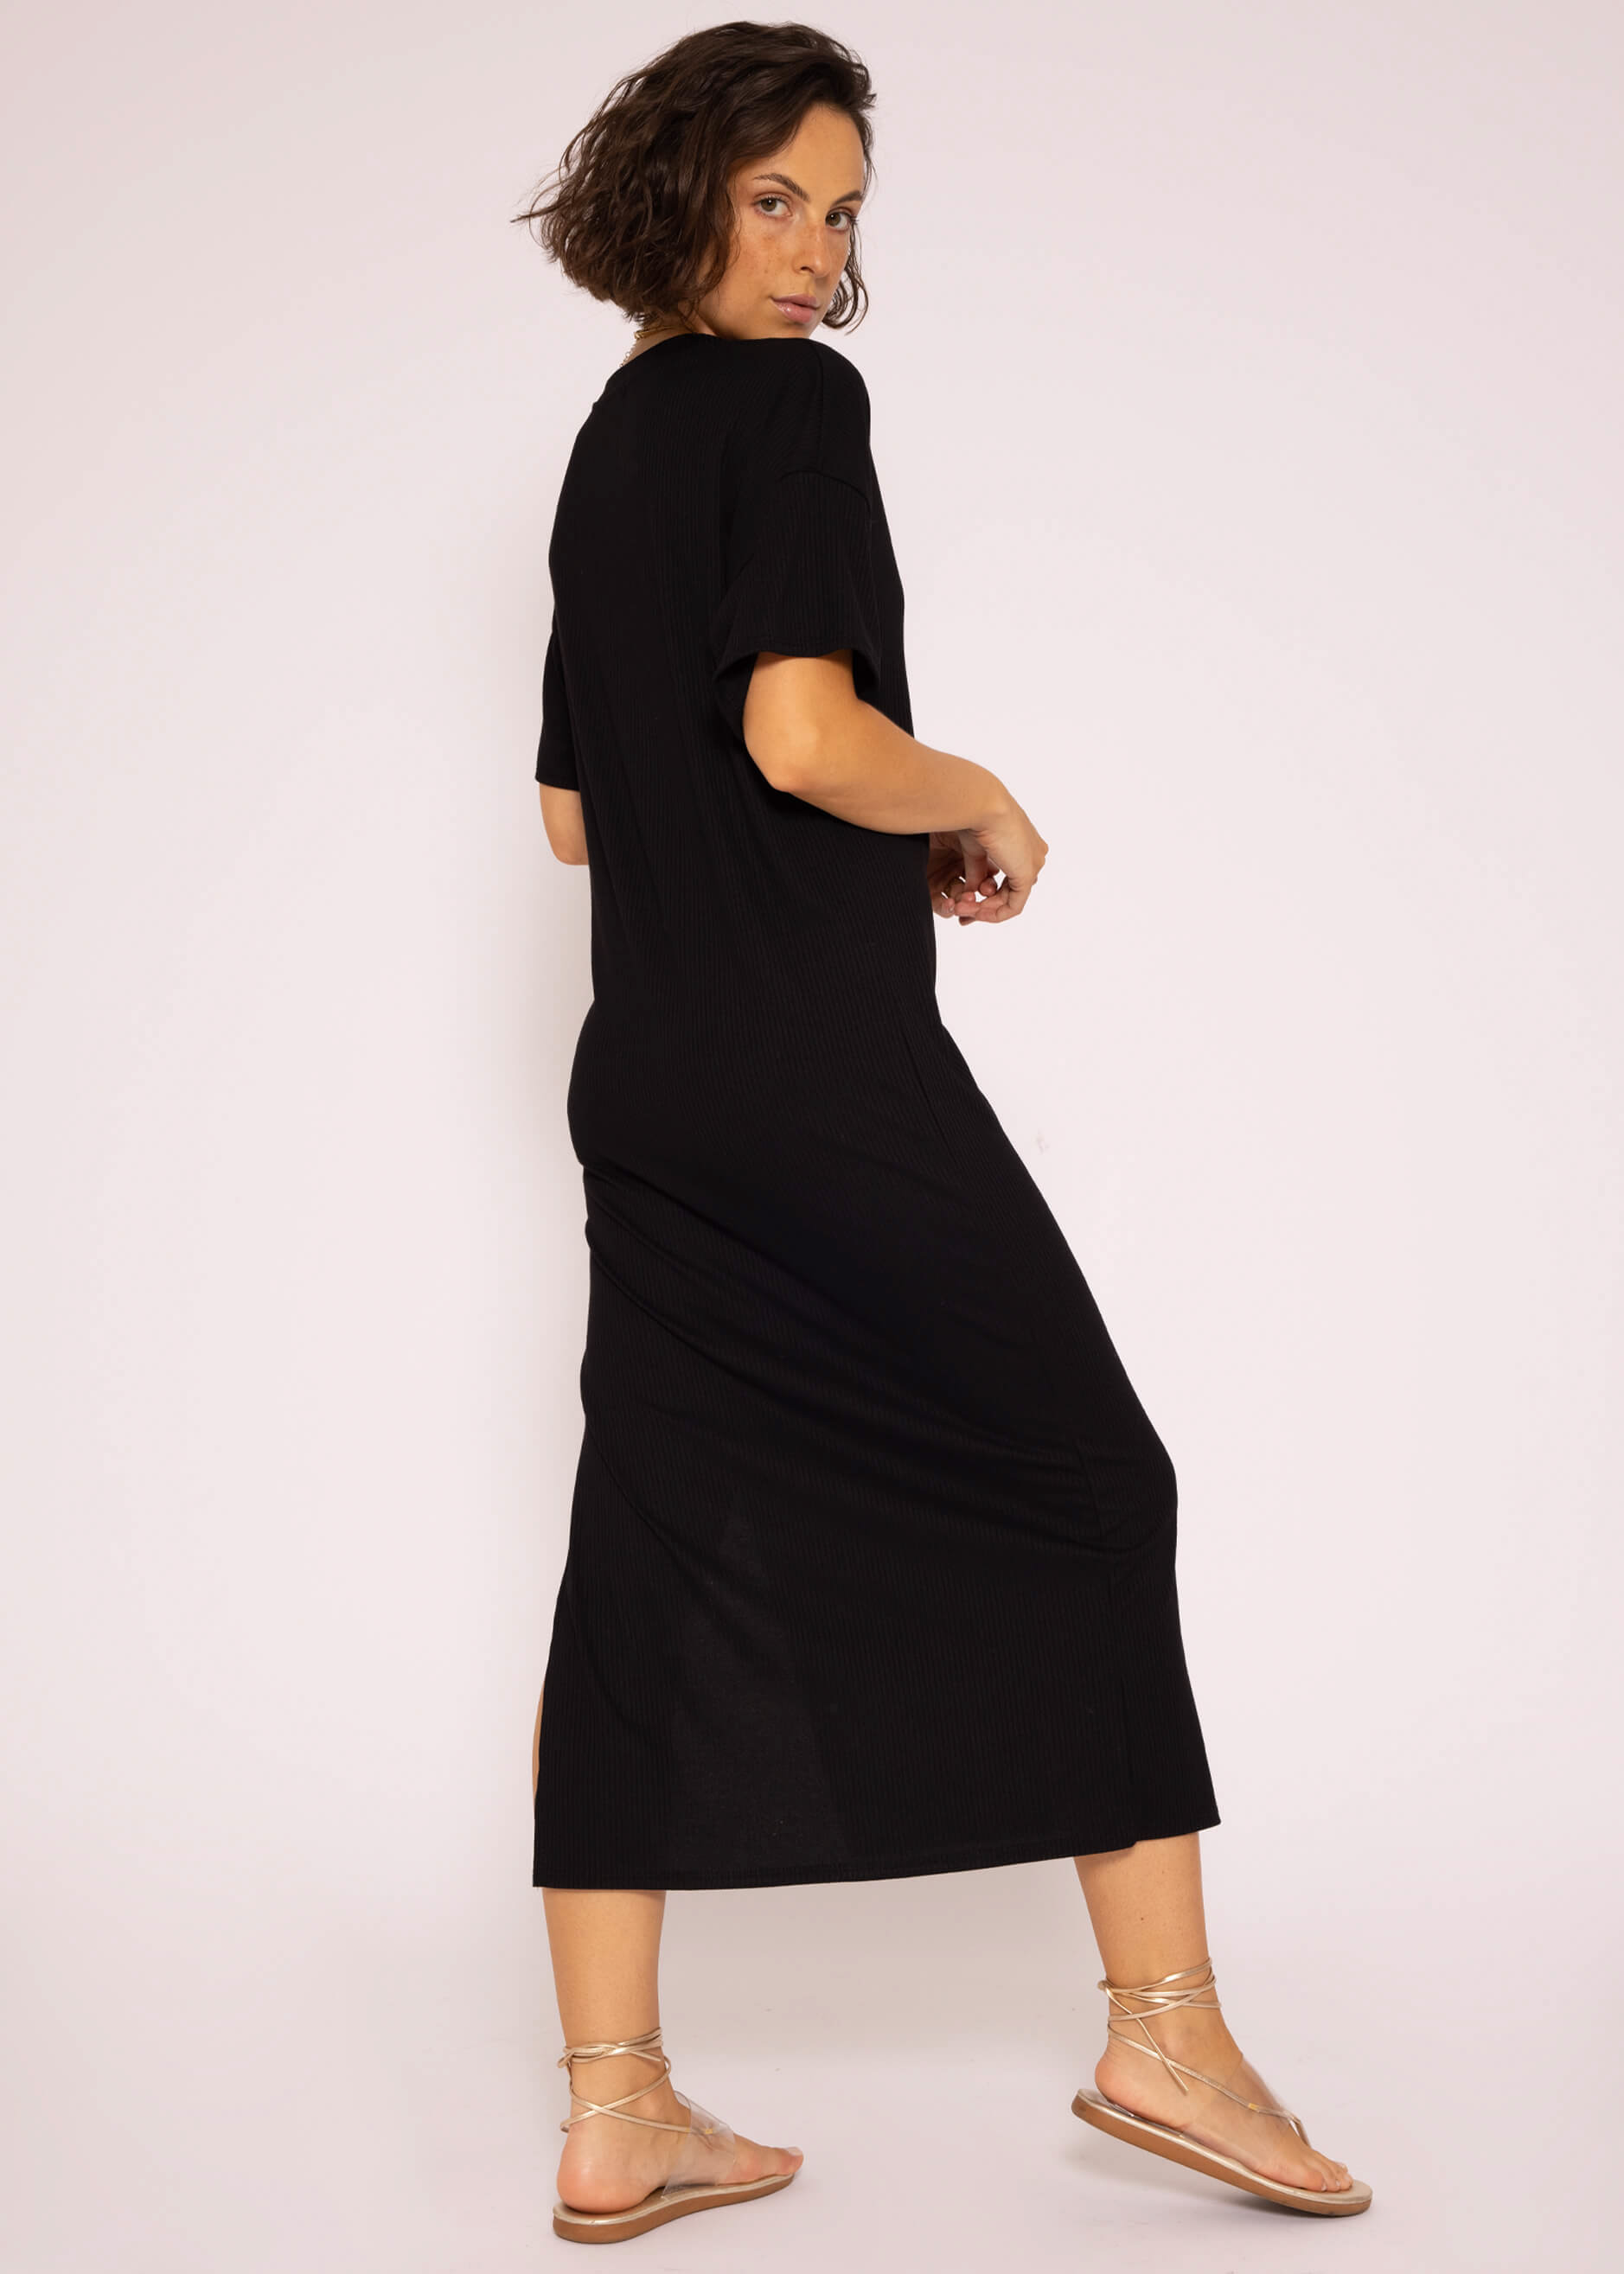 | Kleider Jersey schwarz Schlitz, | mit Kleid | SASSYCLASSY Maxi Bekleidung Rip